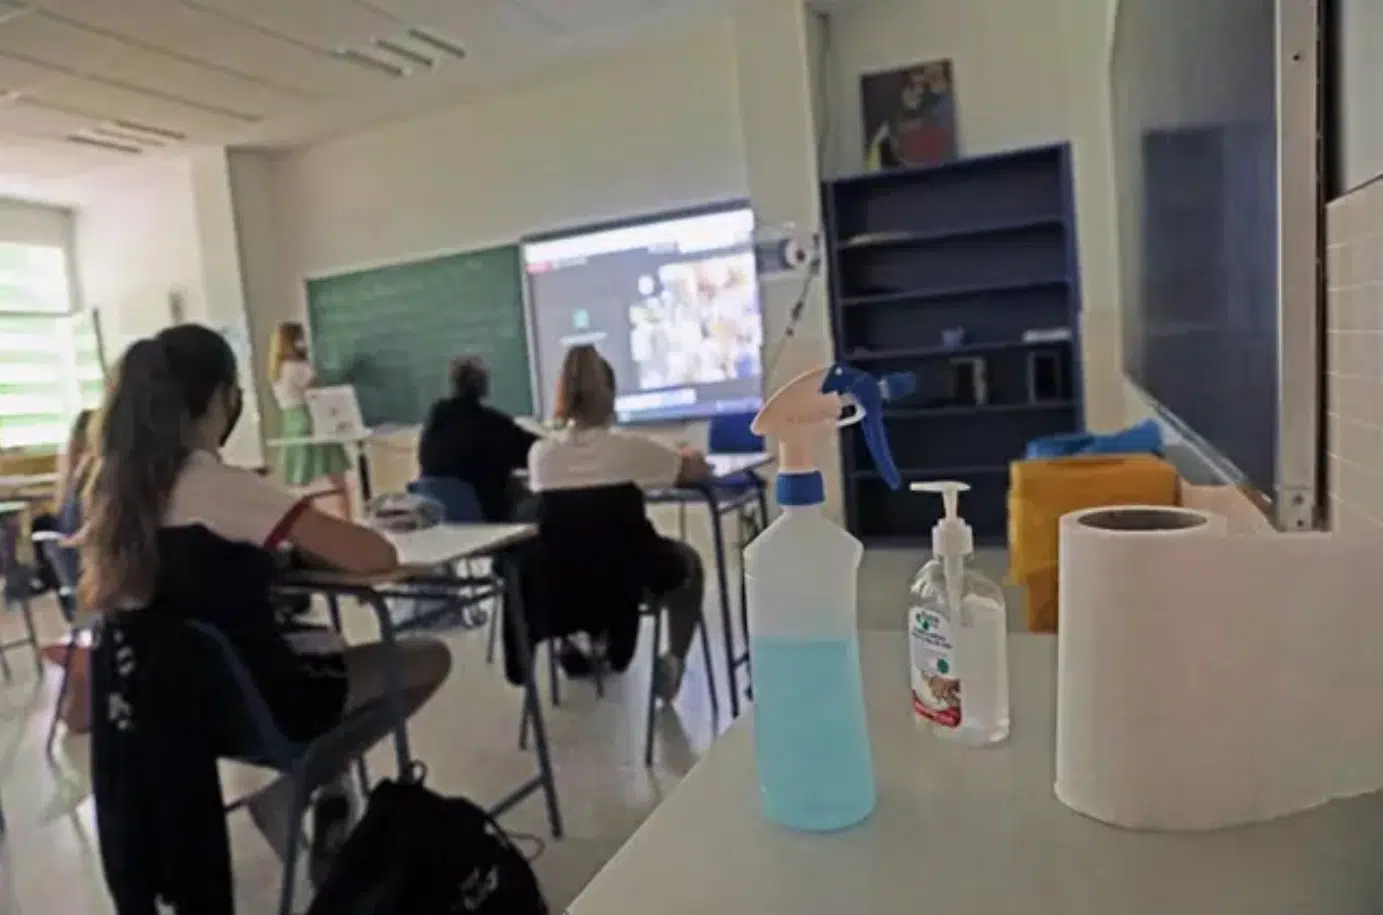 El TSJ de Aragón suspende cautelarmente la instrucción de Educación sobre cuarentena en centros educativos